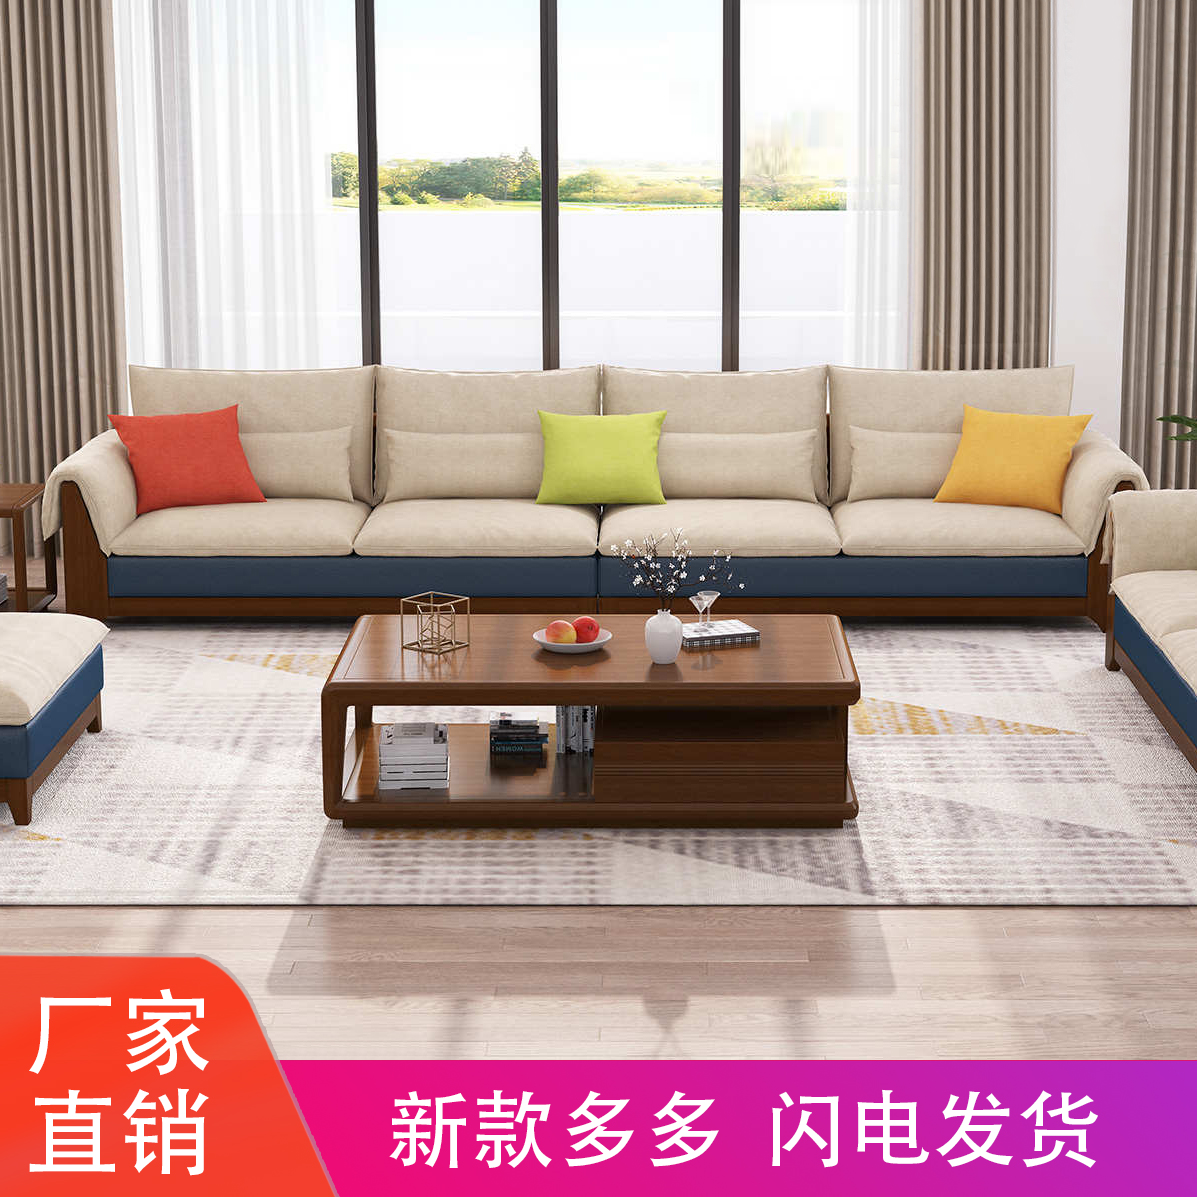 新中式全实木沙发整装客厅小户型沙发北欧现代布艺沙发组合